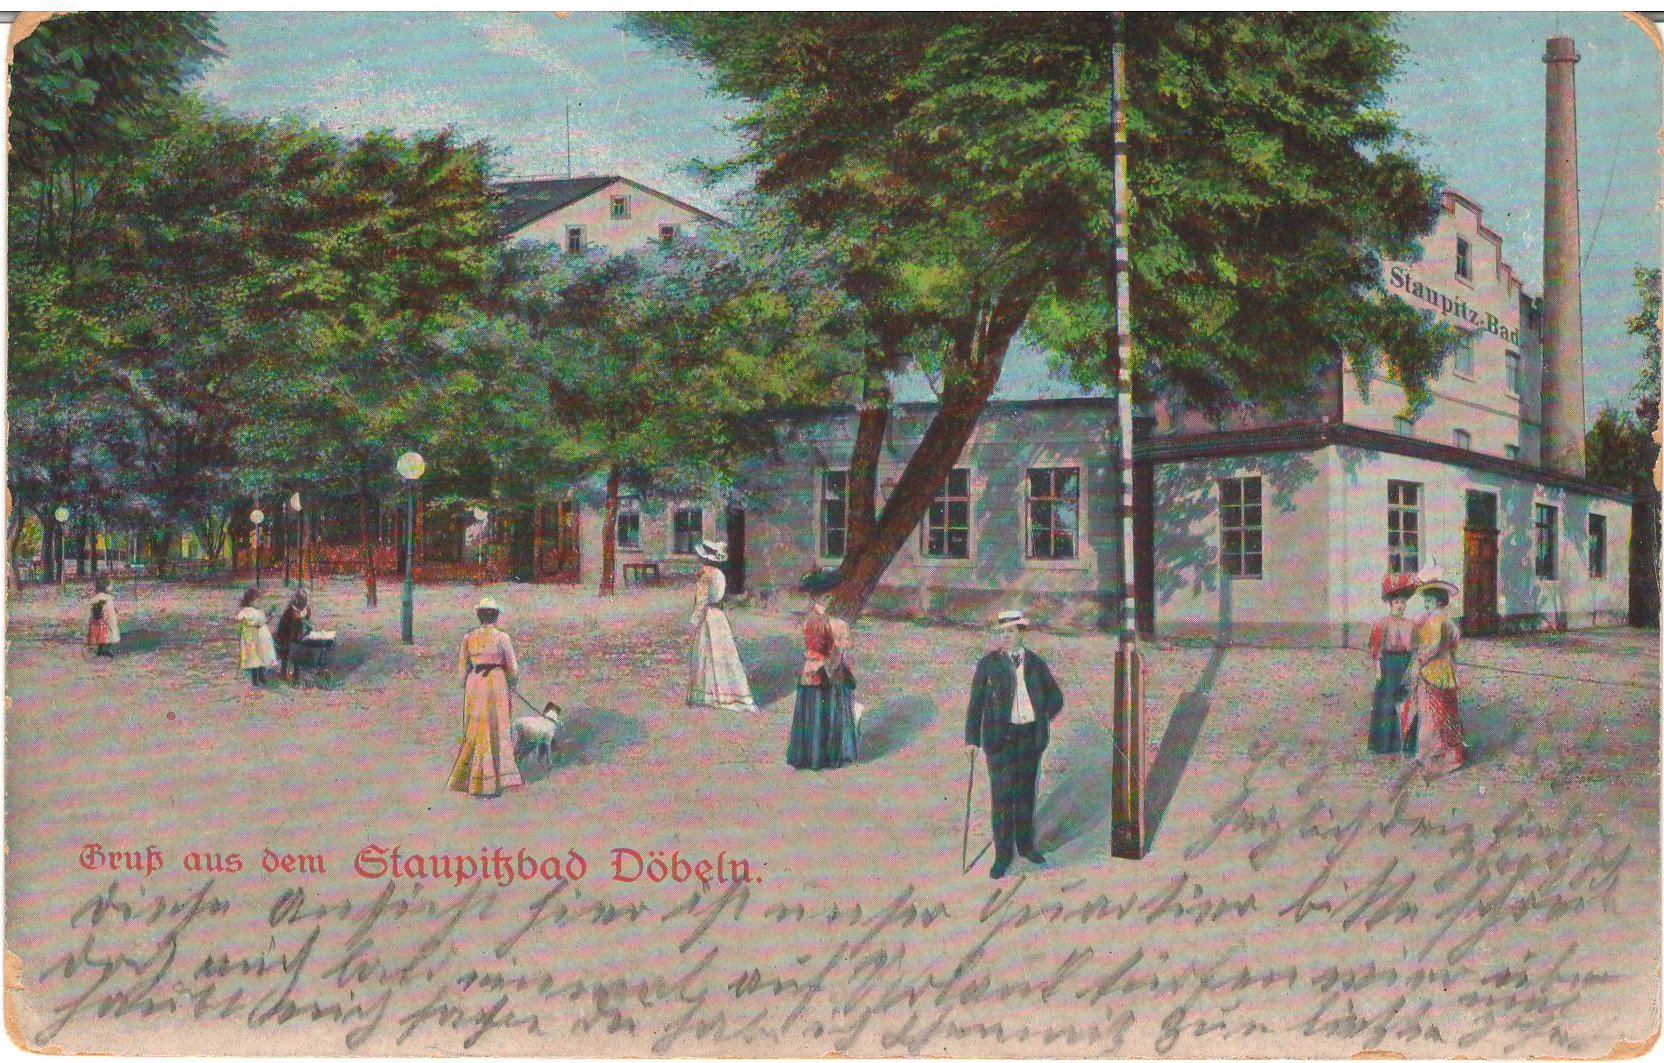 Ansichtspostkarte Döbeln: Gruß aus dem Staupitz-Bad (Stadtmuseum / Kleine Galerie Döbeln CC BY-NC-SA)